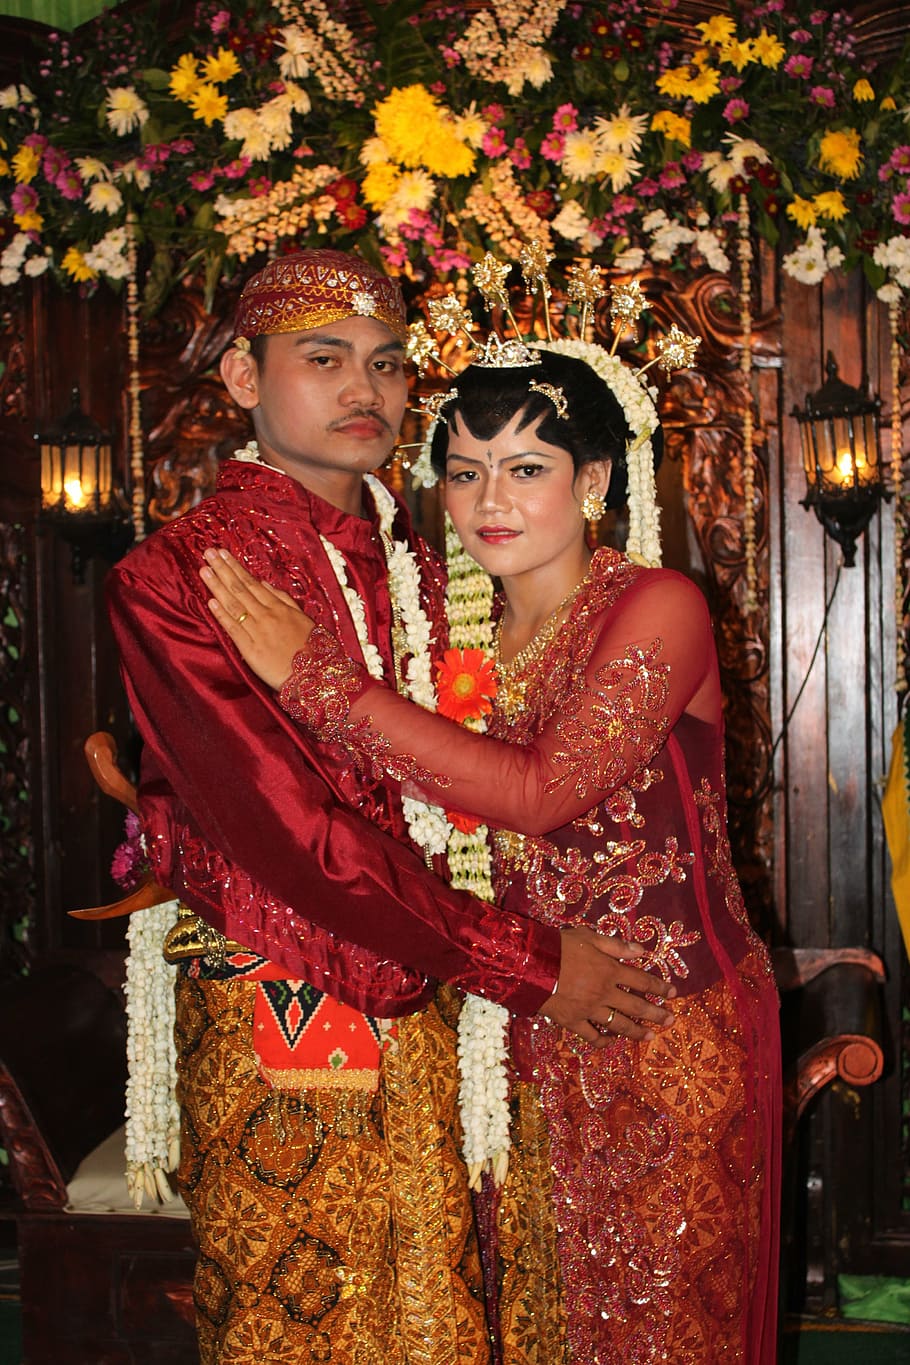 casamento, javanês tradicional, tradição, batik, cultura, duas pessoas, adulto jovem, mulheres, relacionamento de casal, olhando para a câmera